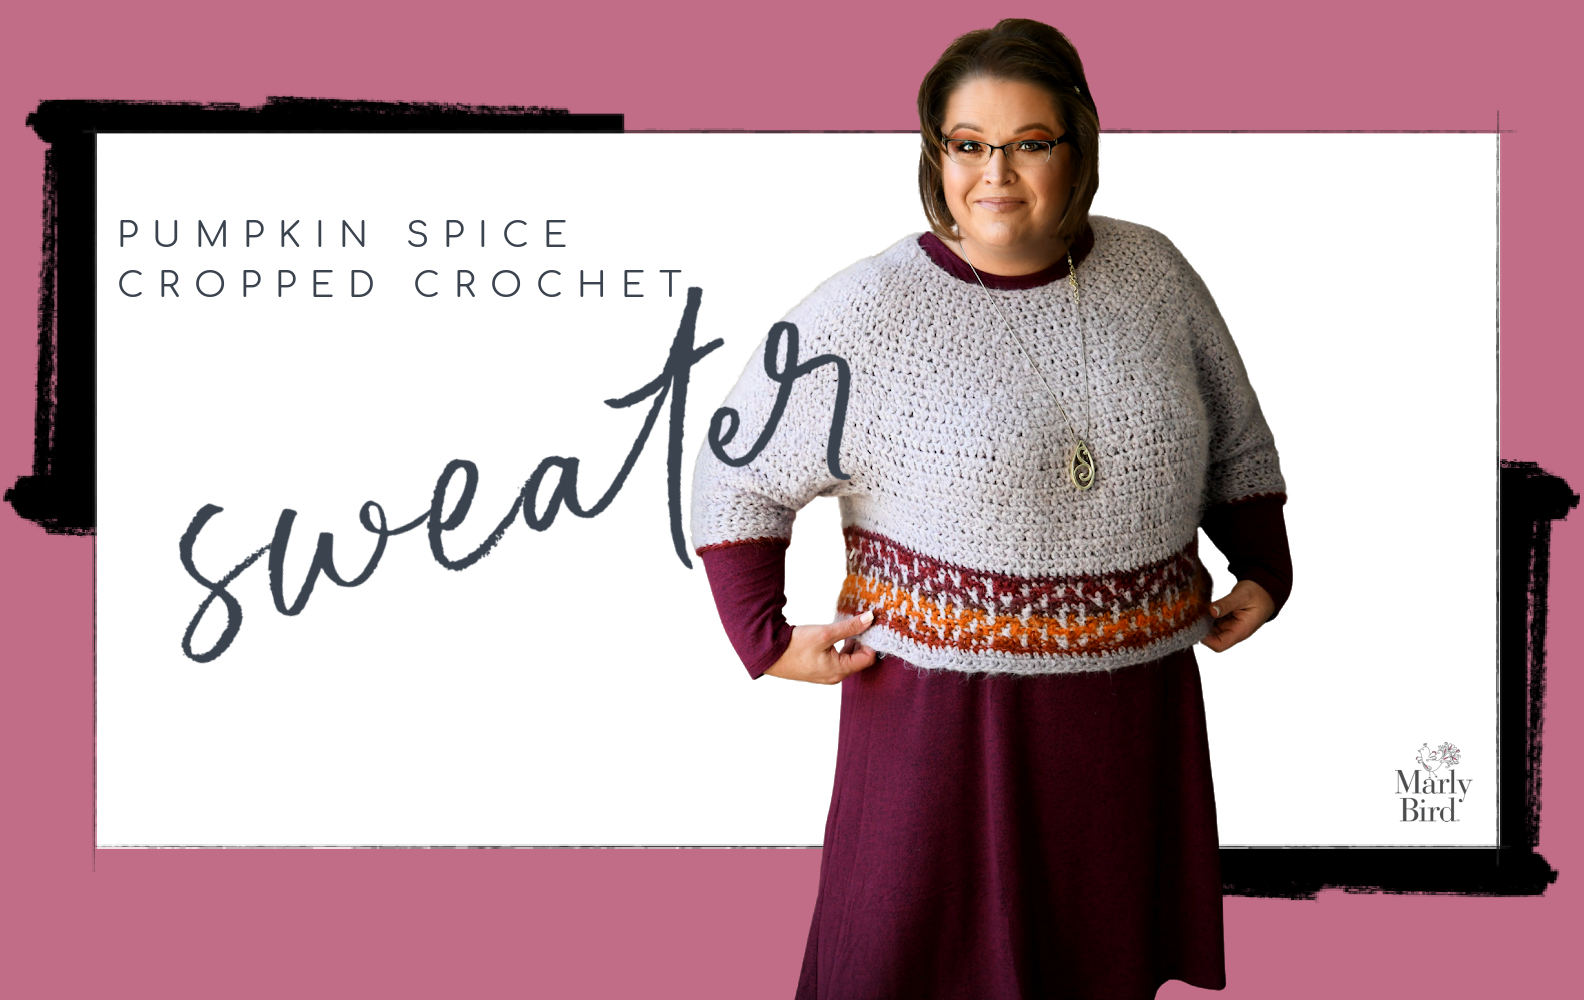 Pumpkin Spice Cropped Crochet Sweater